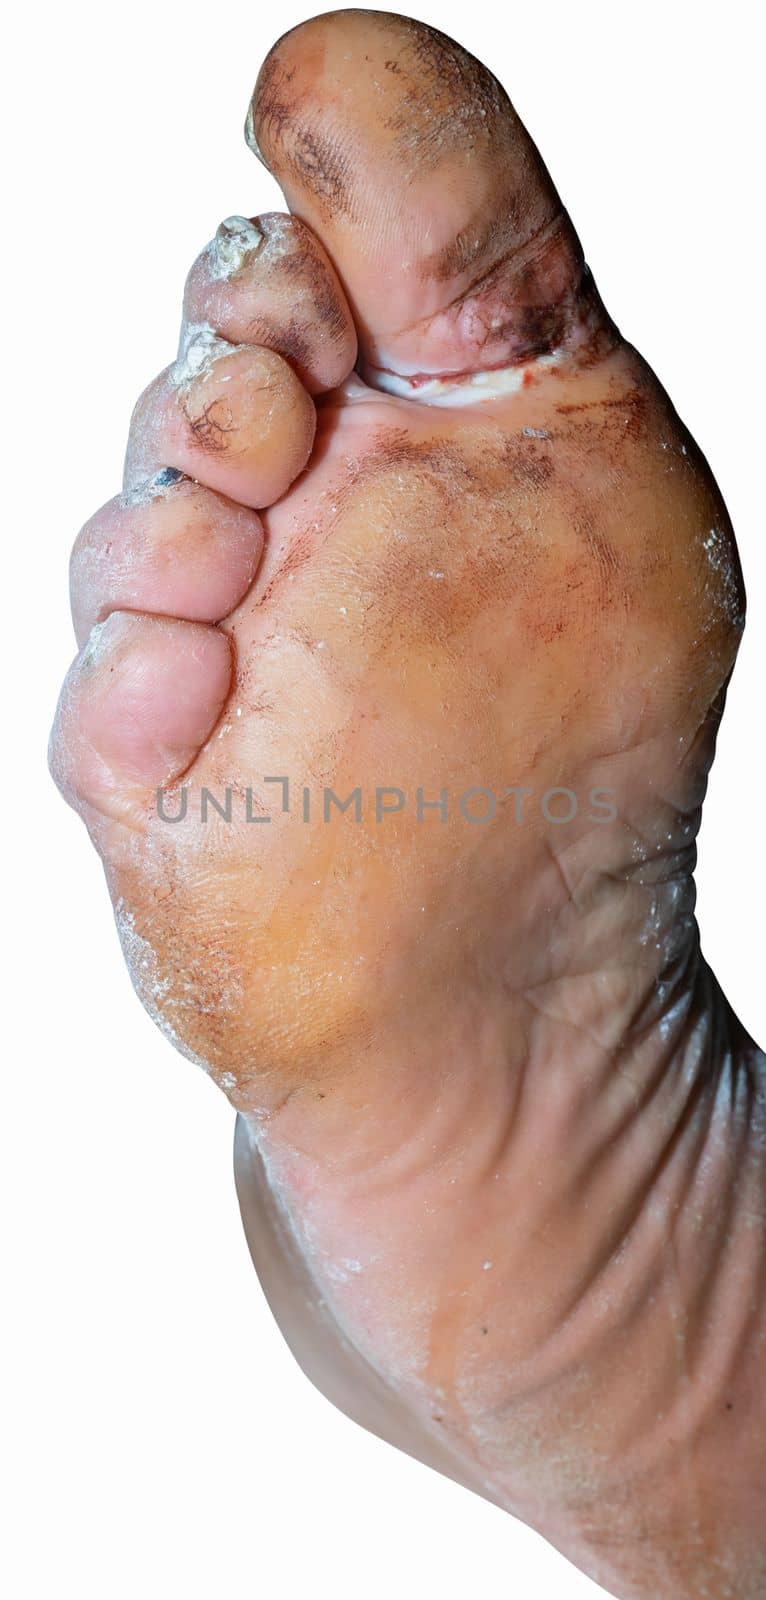 Injured foot of an elderly man on a white background by Serhii_Voroshchuk